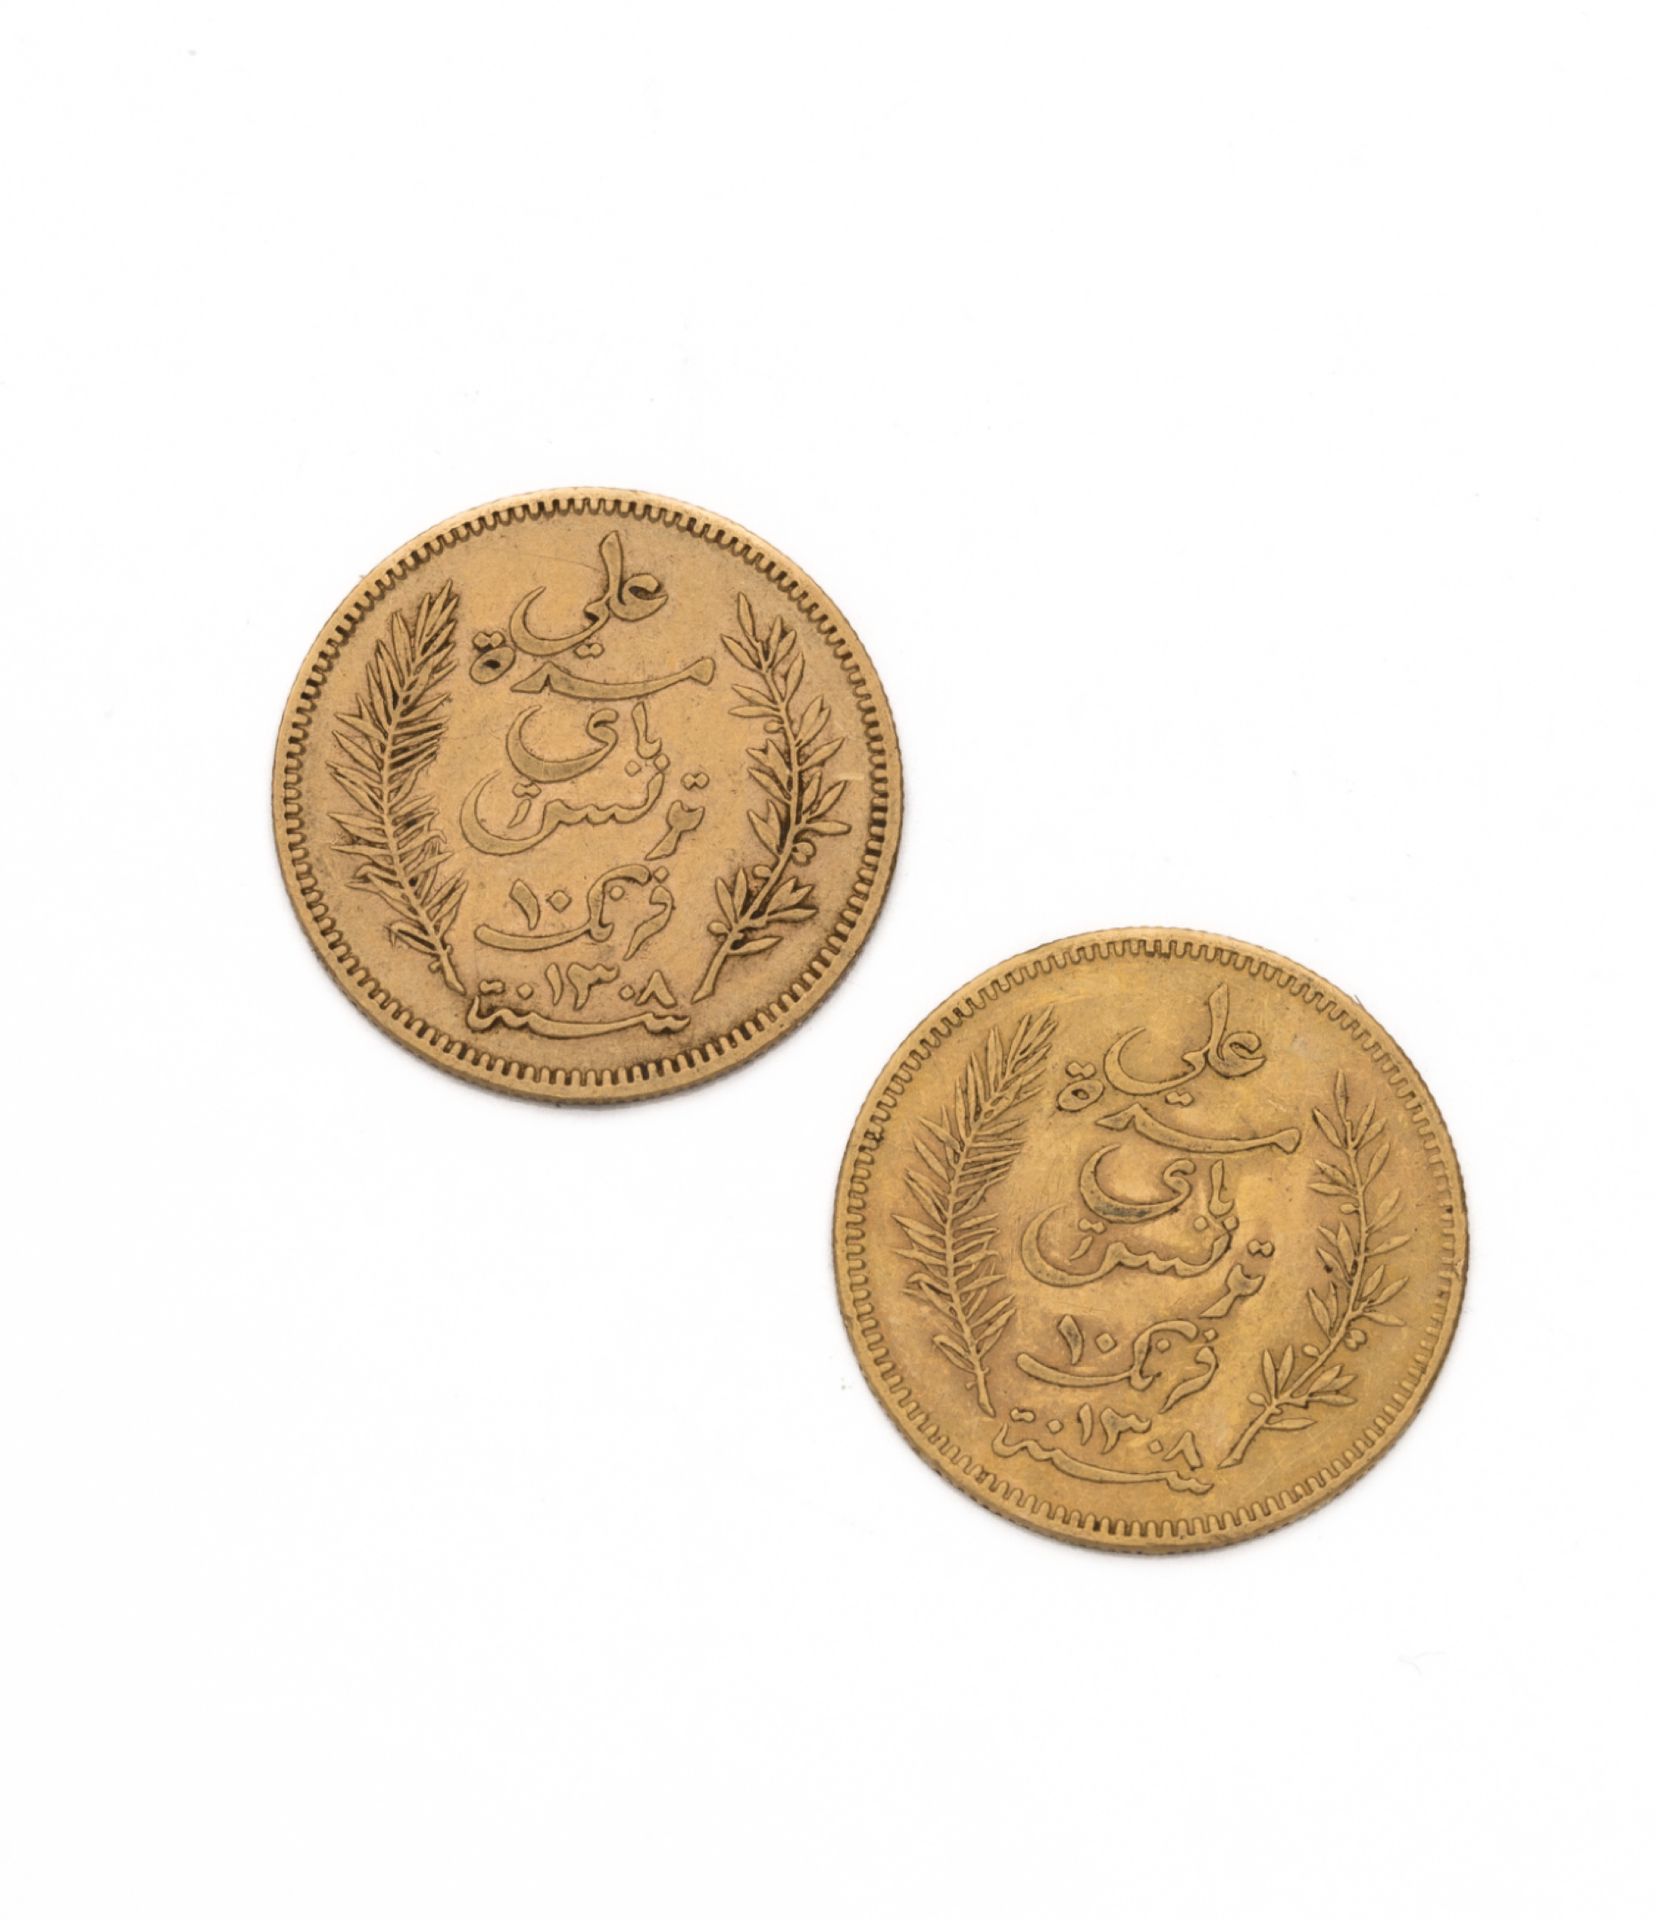 Null TÚNEZ - Protectorado francés
10 francos oro. 2 piezas. 1891 A
Peso : 6,38 g